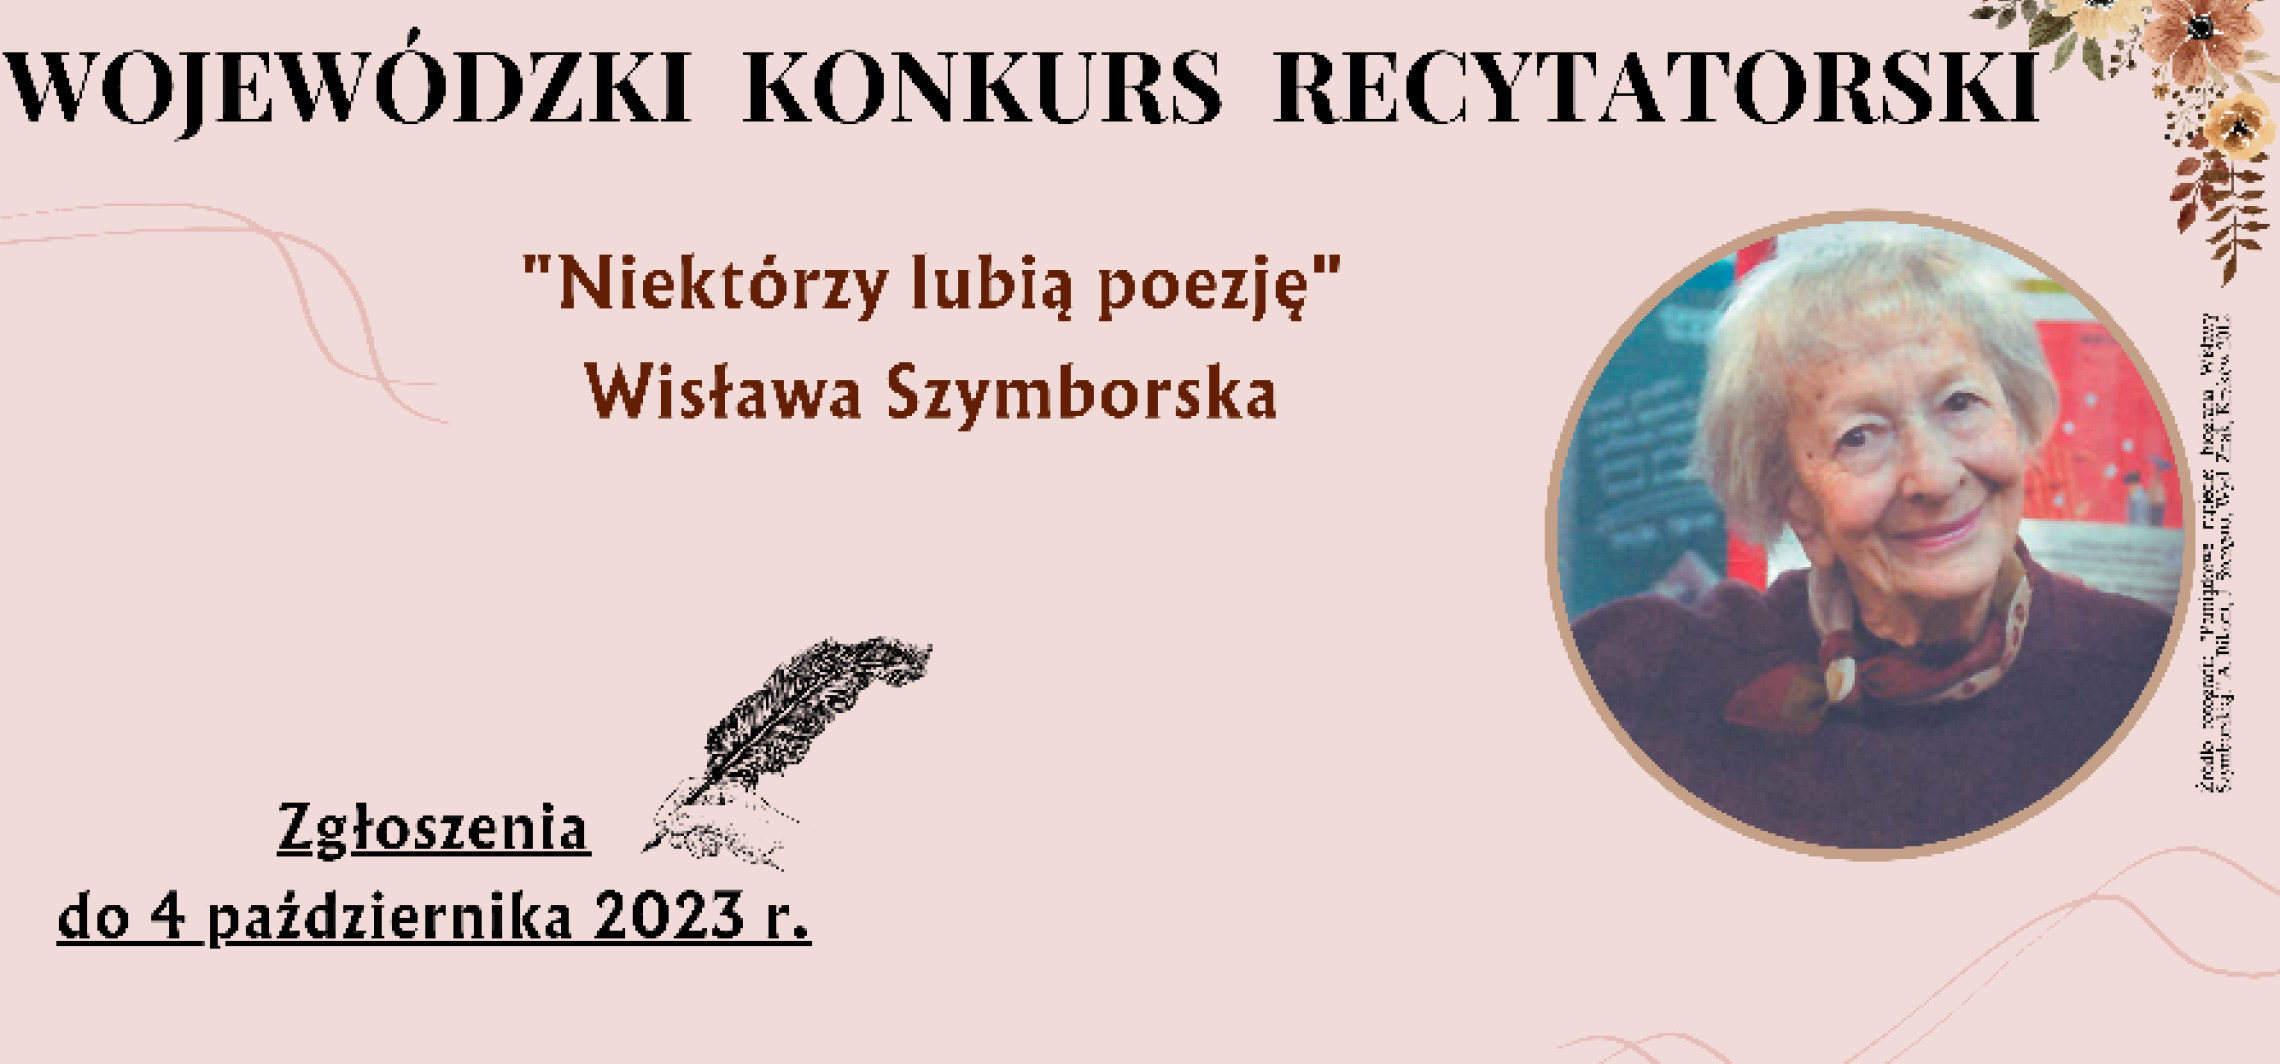 Inowrocław - "Niektórzy lubią poezję". Wyrecytują wiersze Szymborskiej